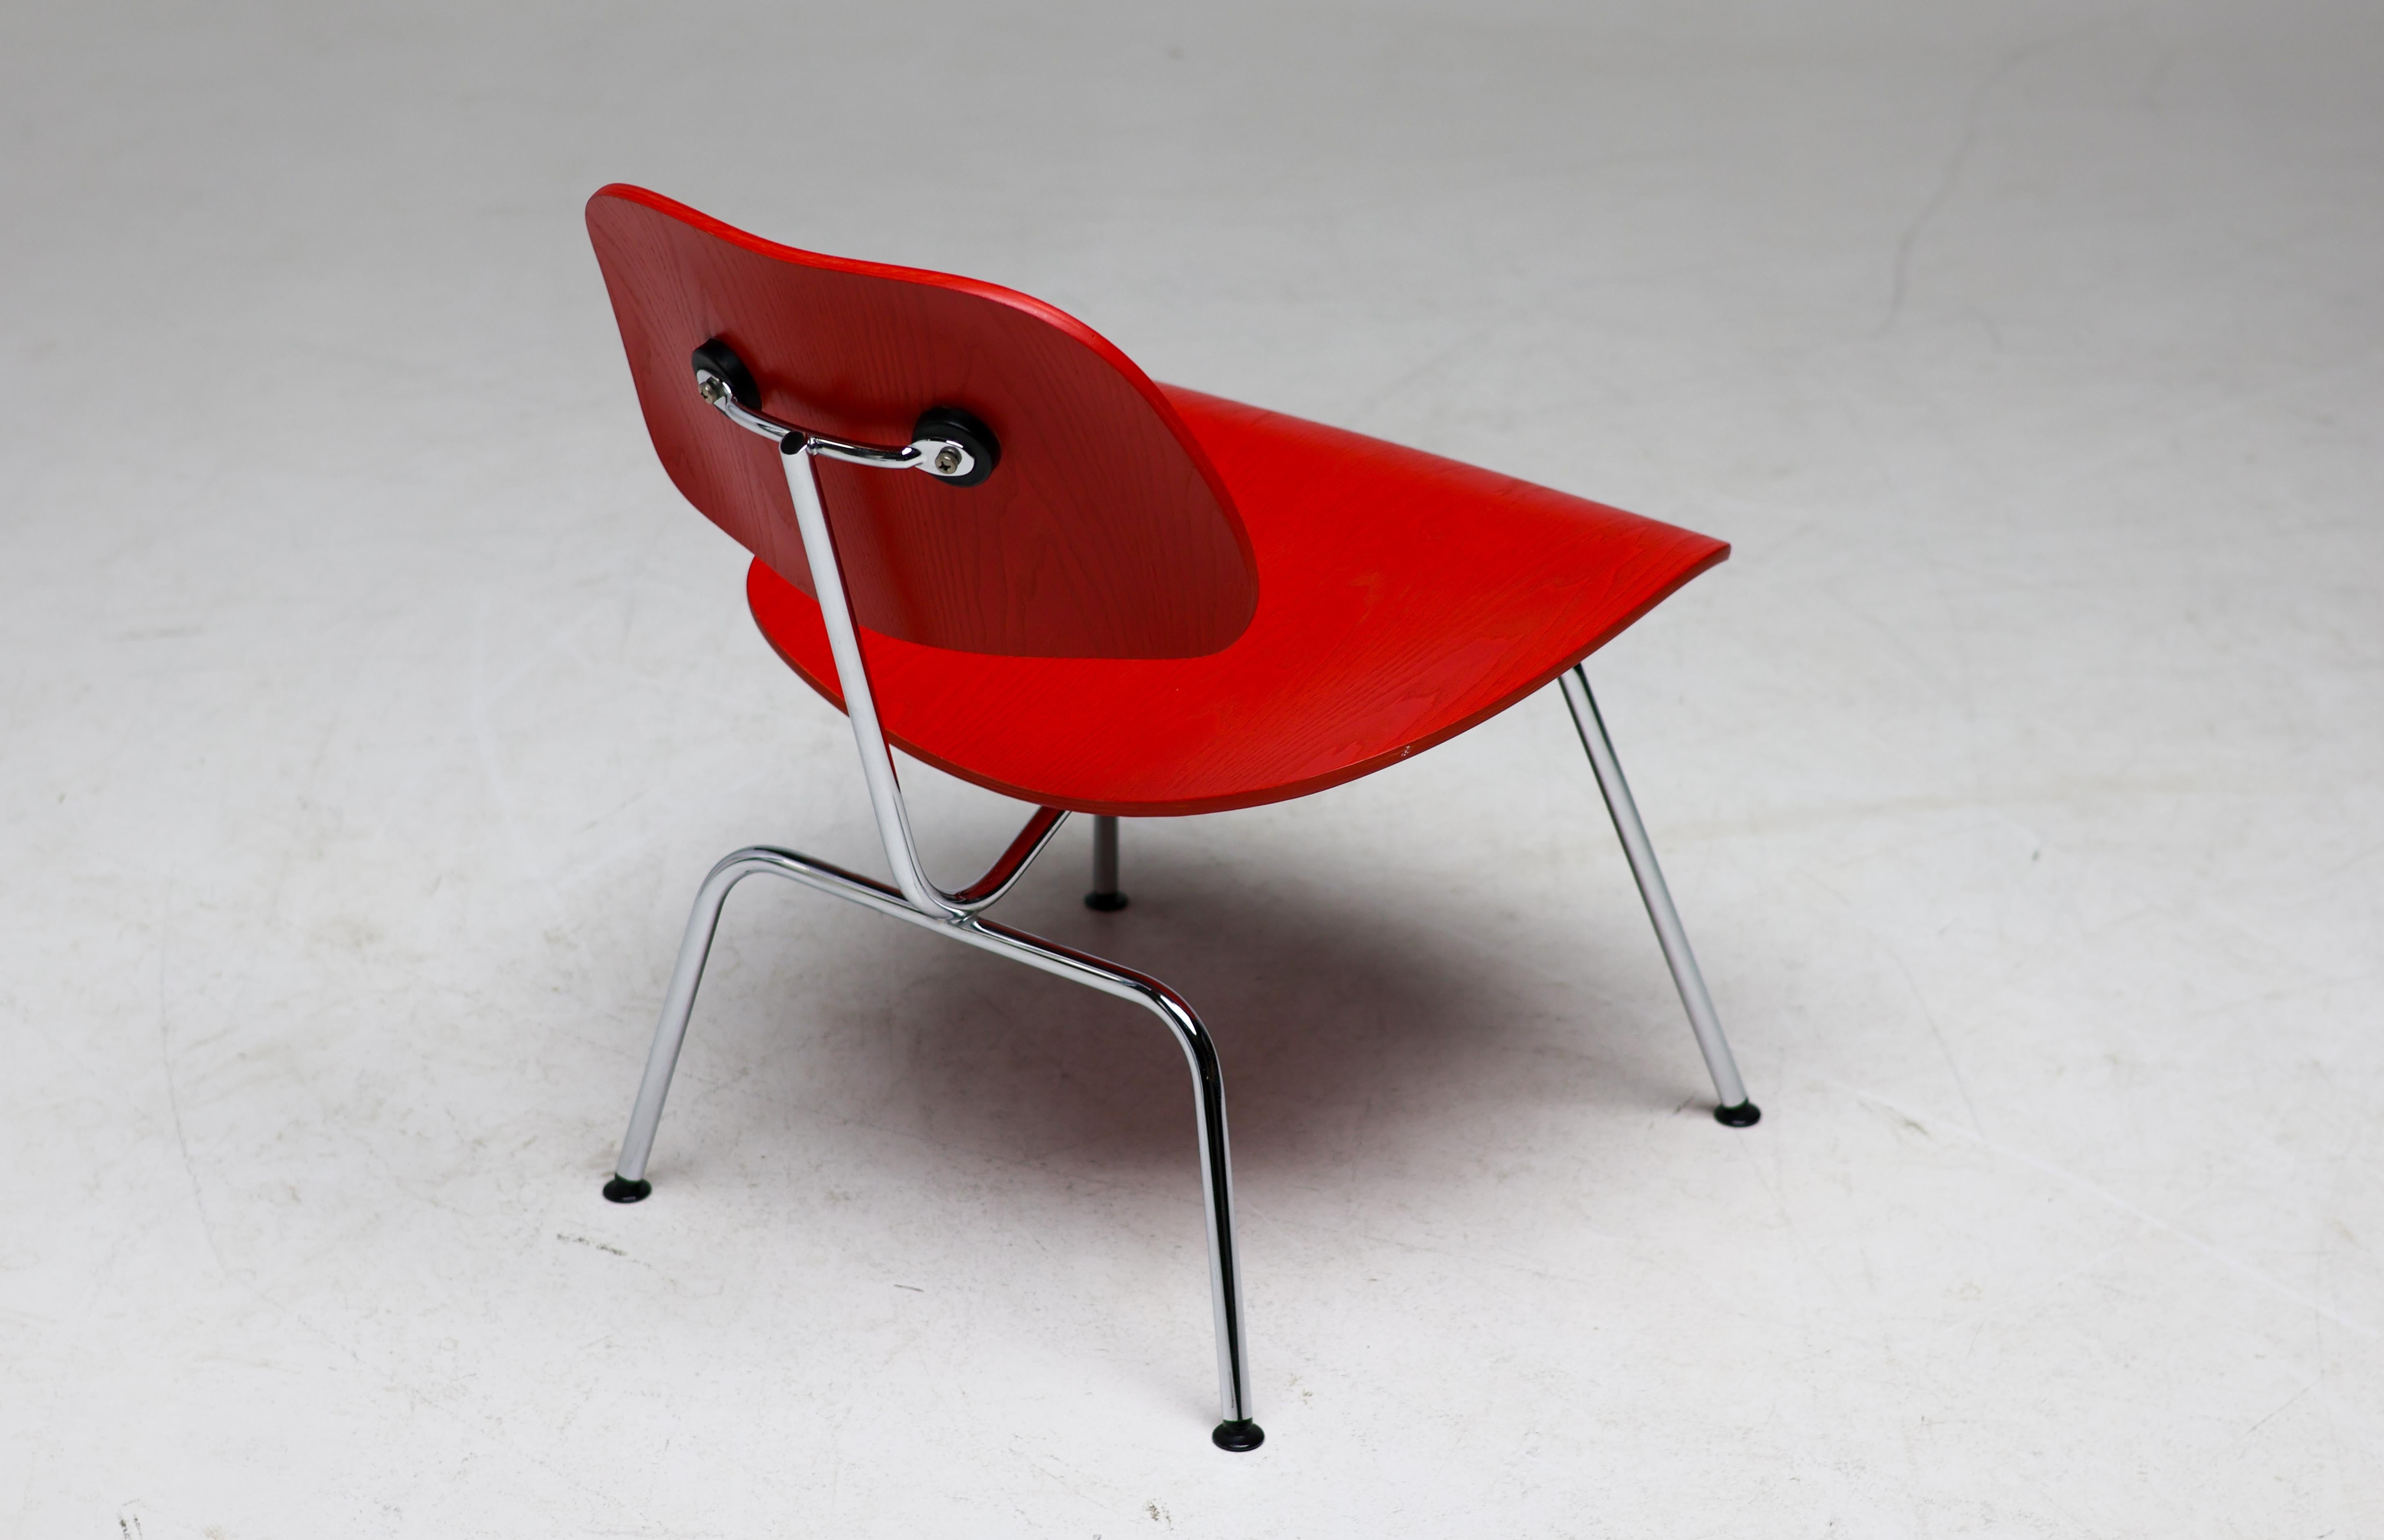 Loungesessel, entworfen von Charles und Ray Eames für Vitra, 1998.  Markiert mit Label.
Seltene leuchtend rote Version, die nur in einem begrenzten Zeitraum von 1998 bis 2006 produziert wurde.

Der von Charles und Ray Eames entworfene Vitra LCM